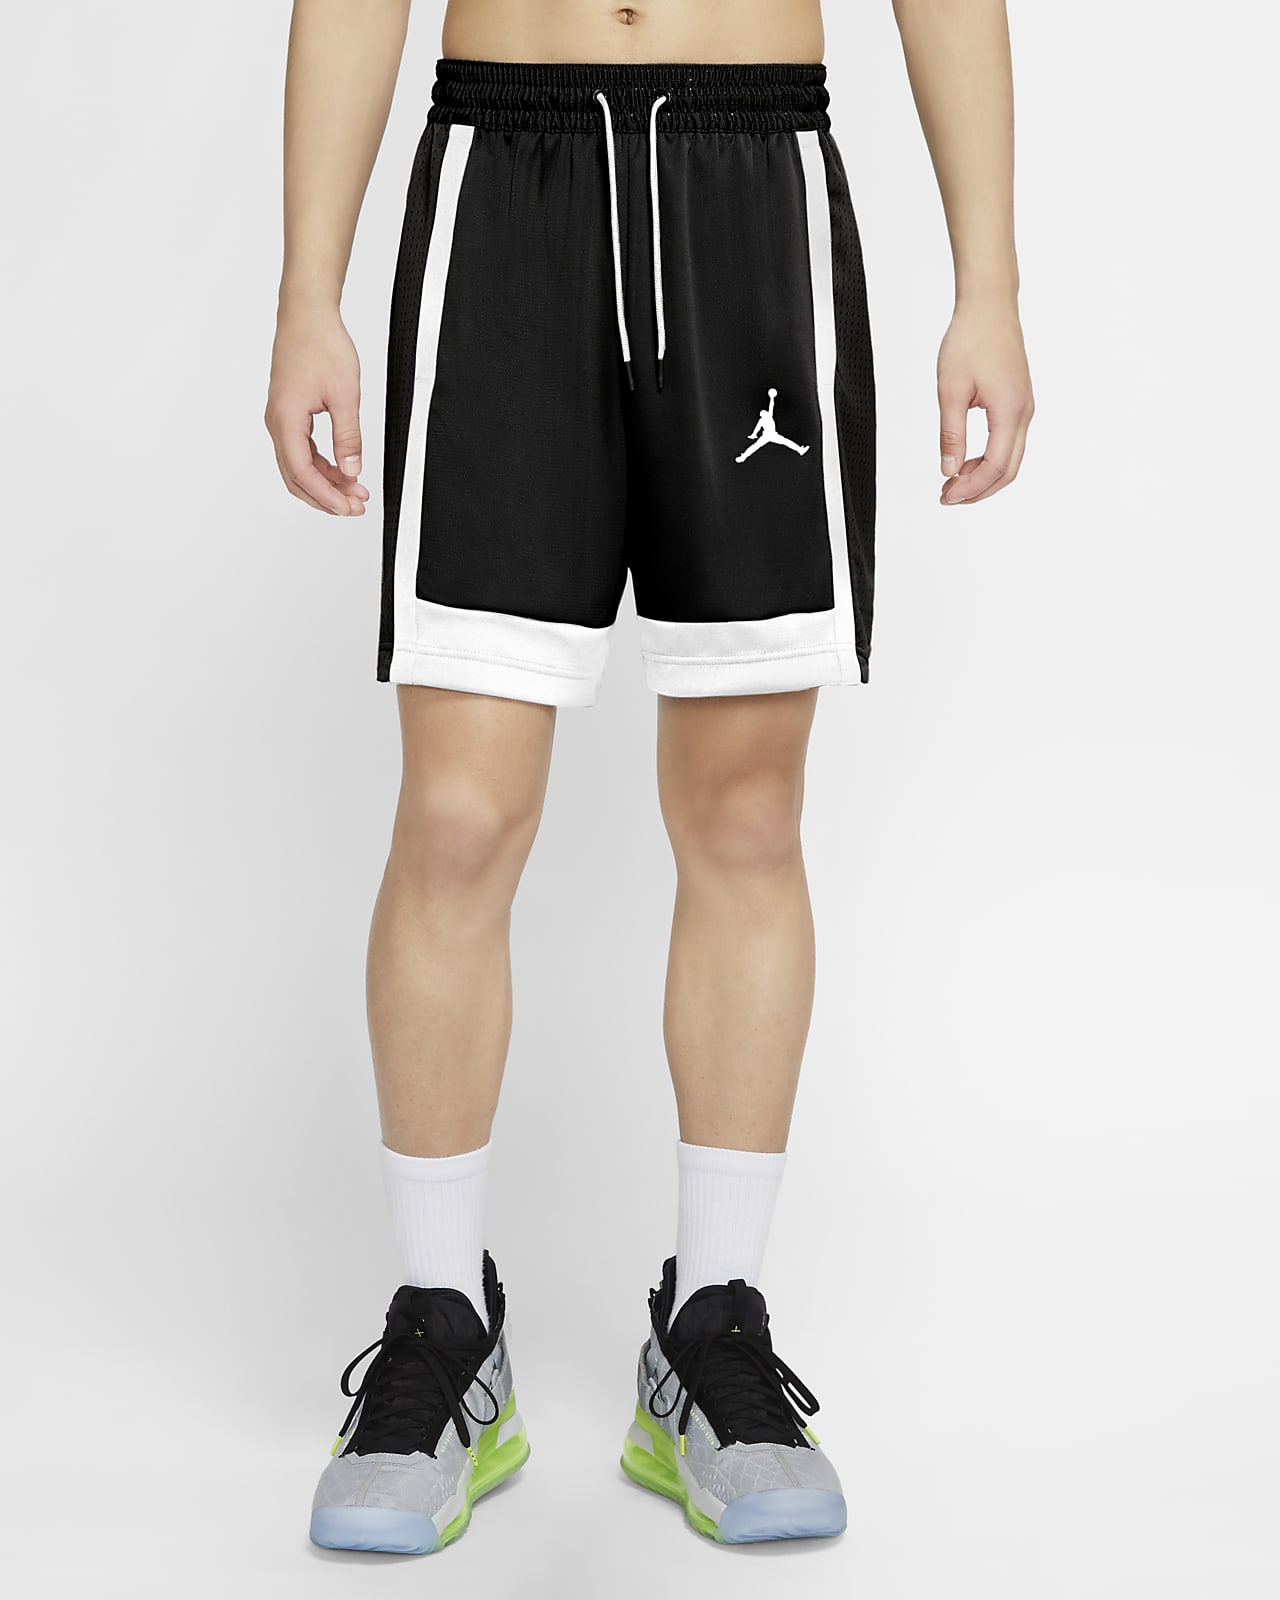 Jordan Air Men's Basketball Shorts. Nike FI